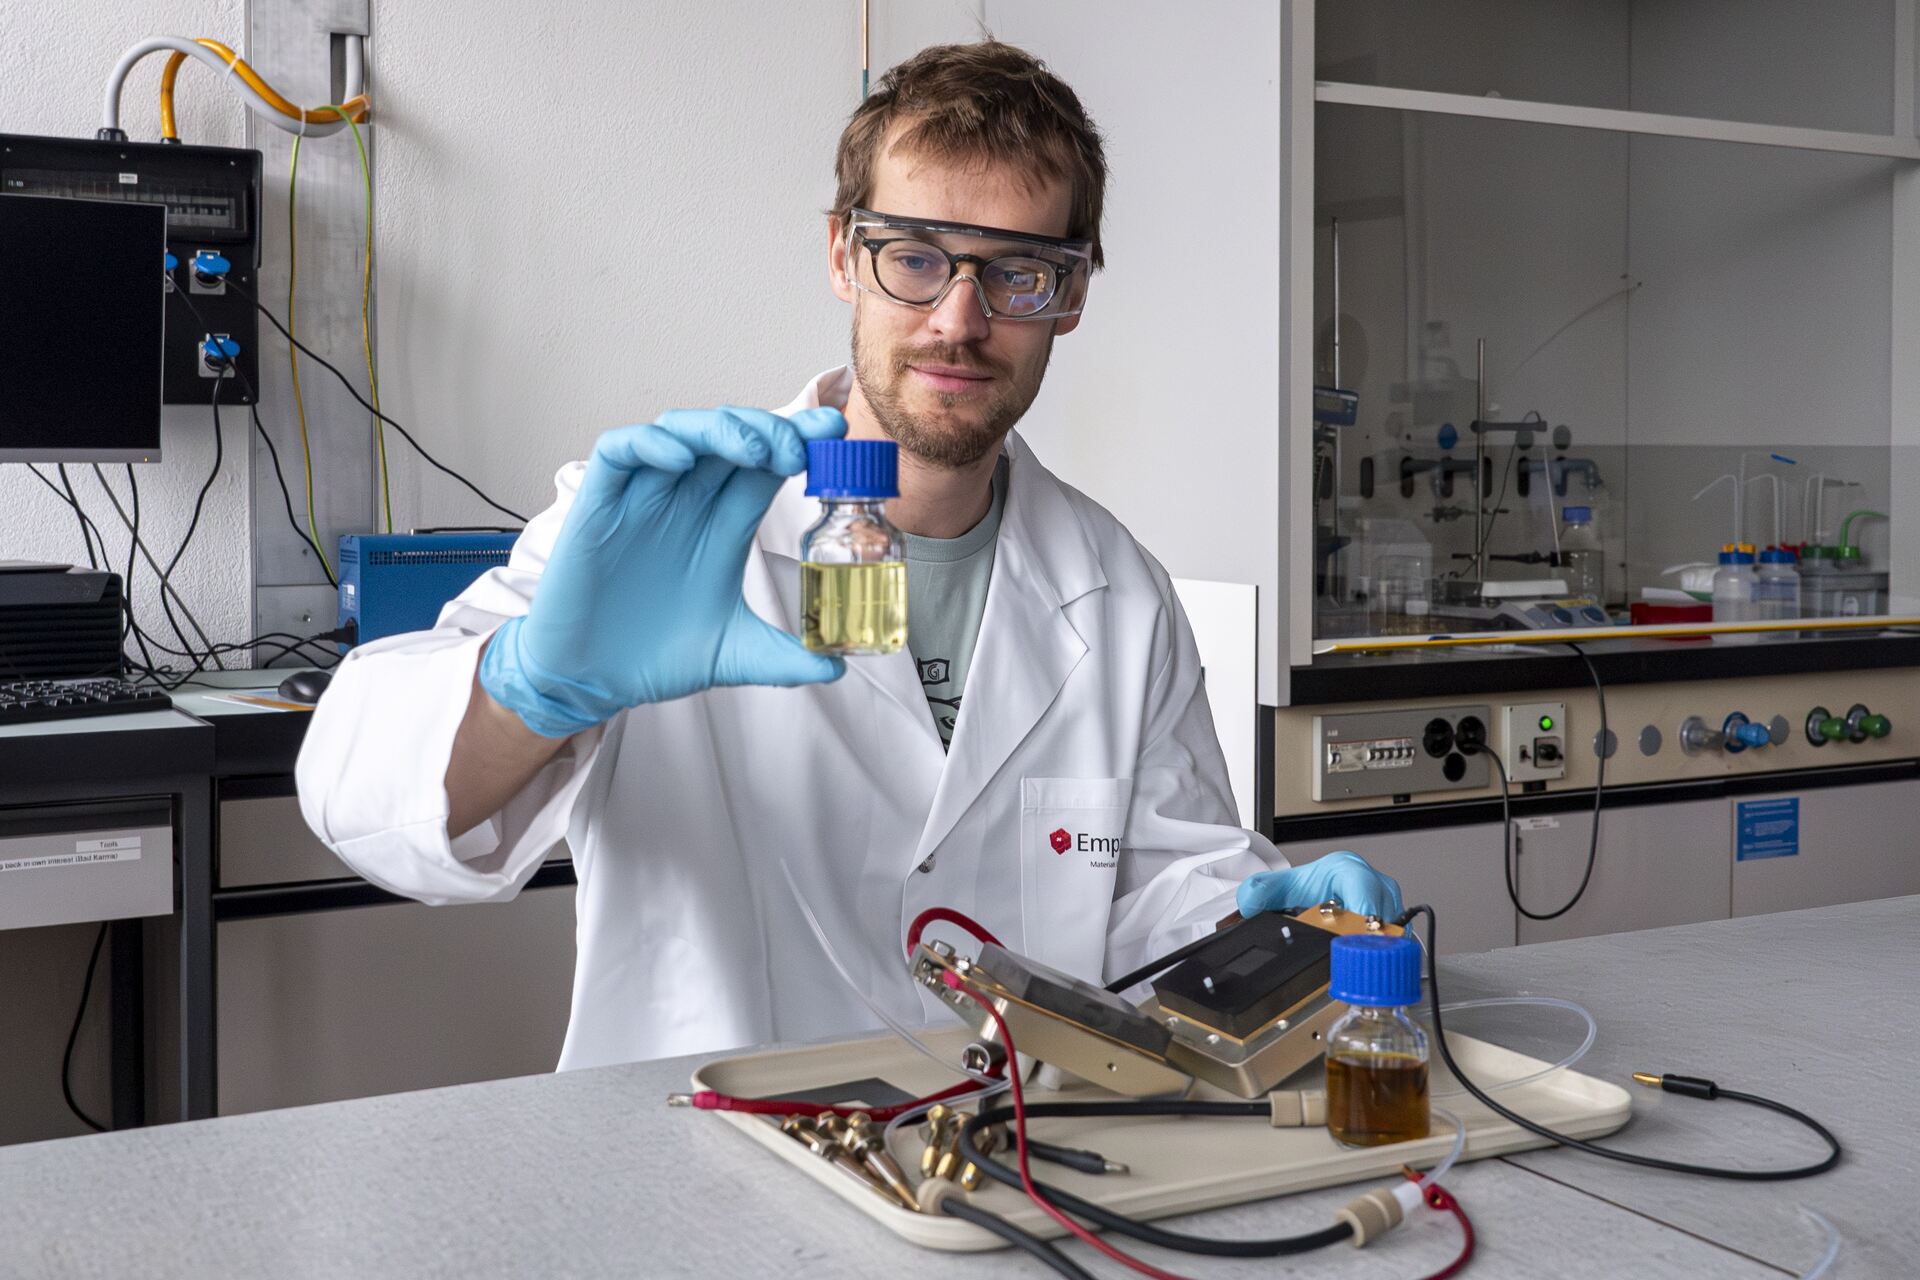 Batterie: David Reber, giovane ricercatore dell’EMPA in Svizzera, intende disaccoppiare completamente l'accumulo di energia dalla soluzione elettrolitica per svecchiare i tradizionali concetti della batteria a flusso a base d’acqua